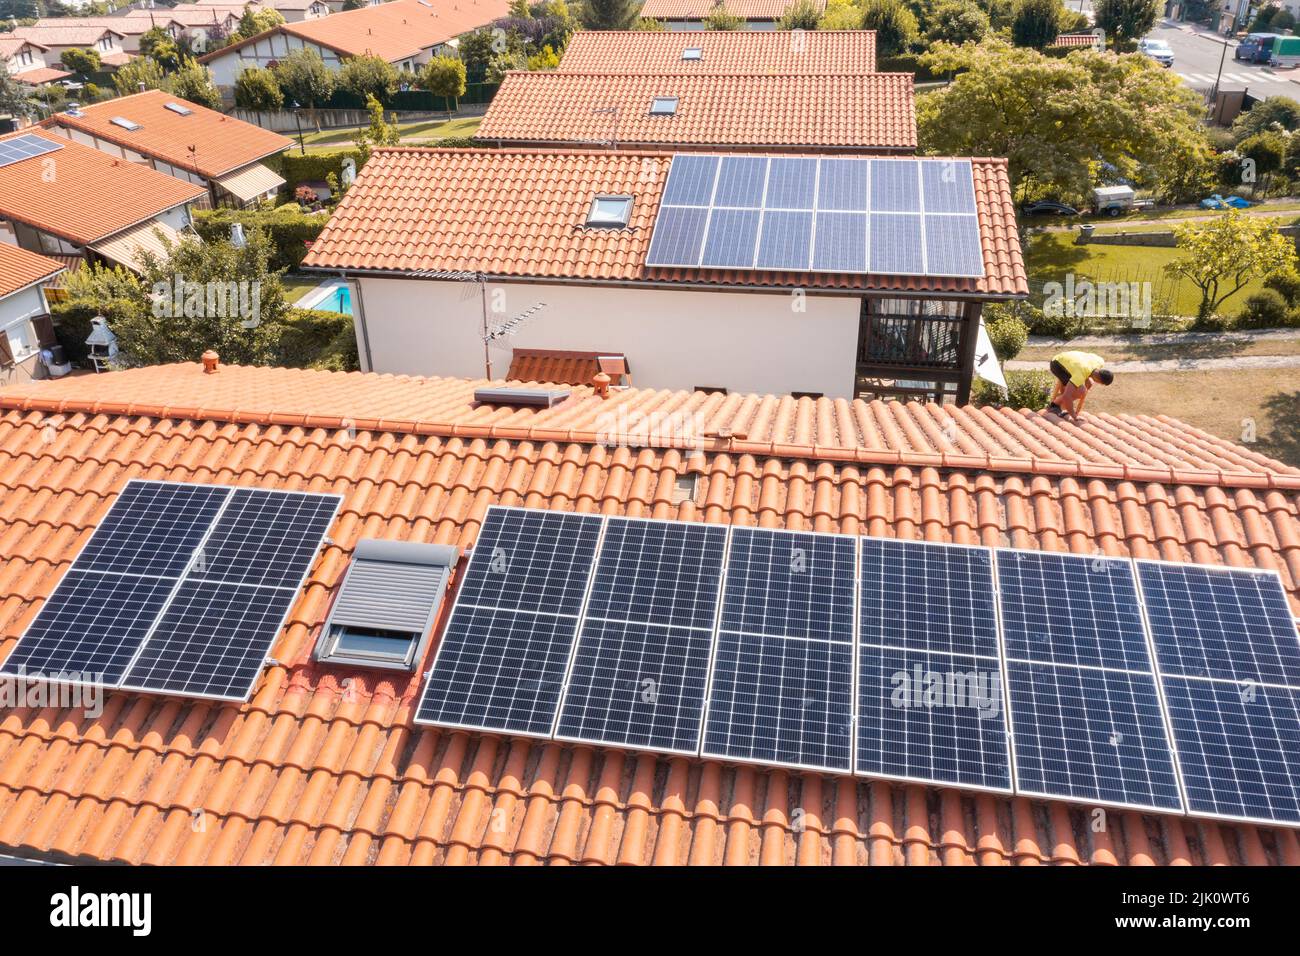 Travailleur installant des panneaux solaires sur un toit. Vue de drone. 4K. Navarre, Espagne, Europe. Concepts d'environnement et de technologie. Banque D'Images